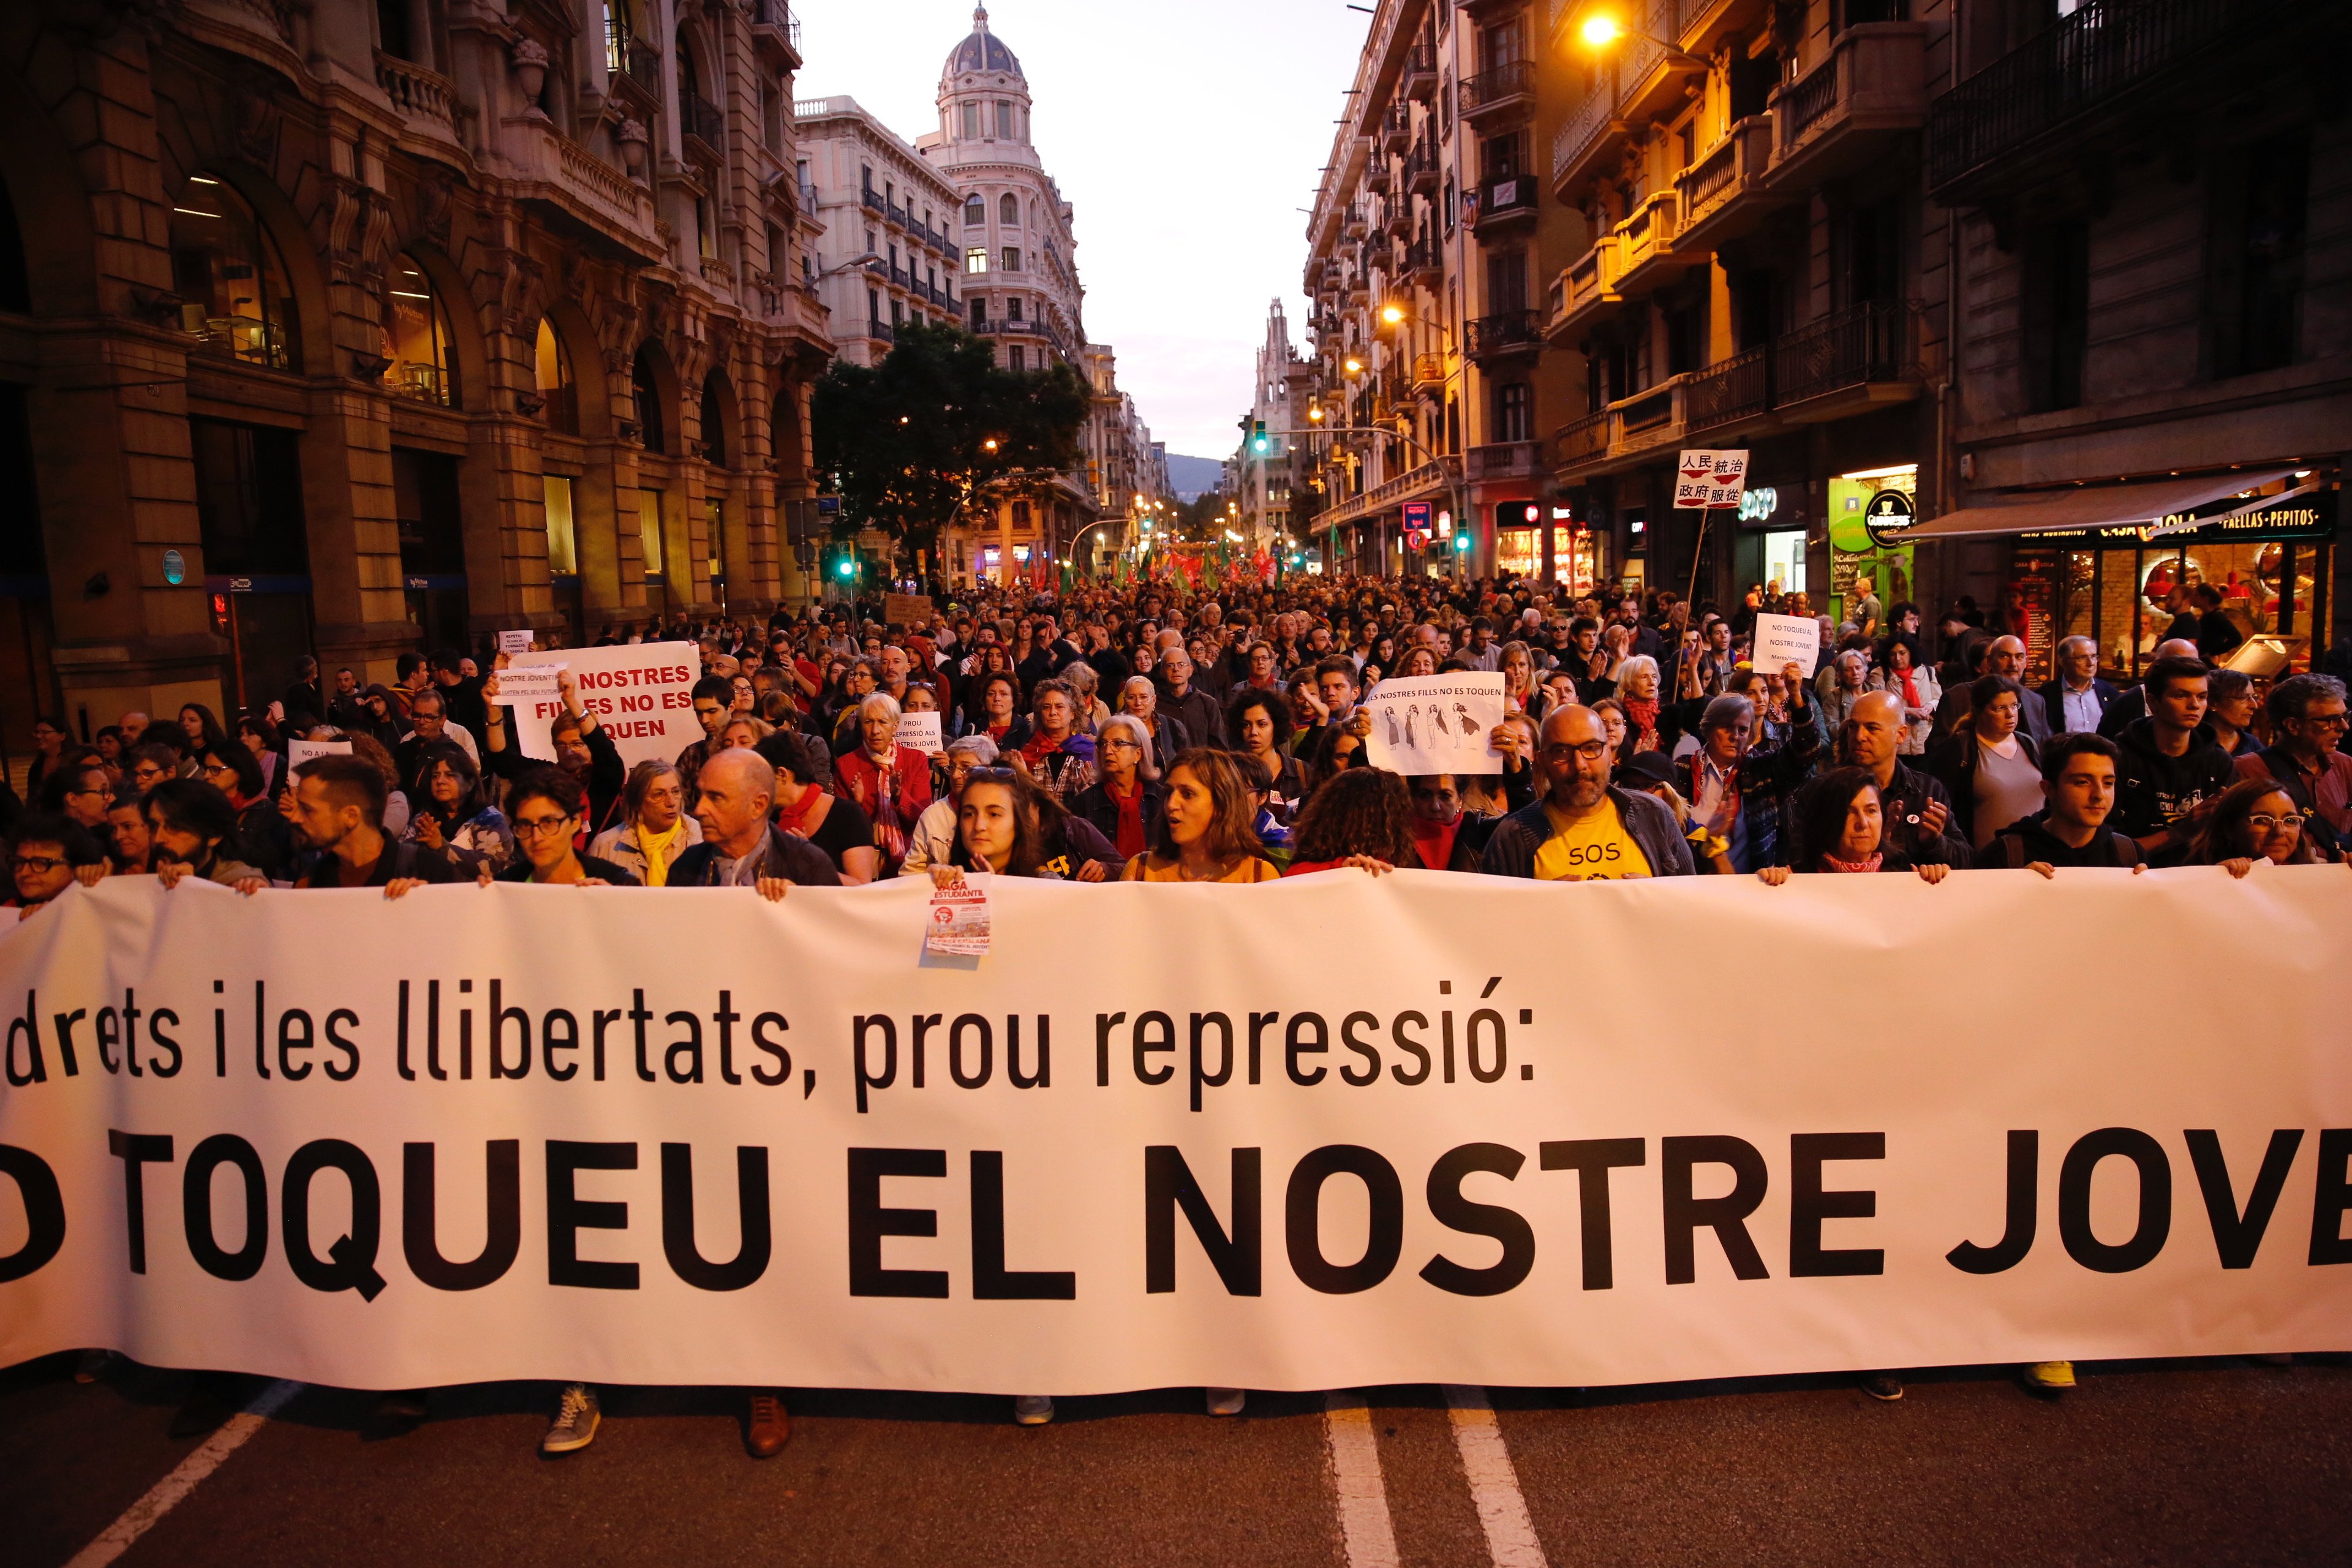 Multitudinaria manifestación en el centro de Barcelona contra la "represión" a los jóvenes